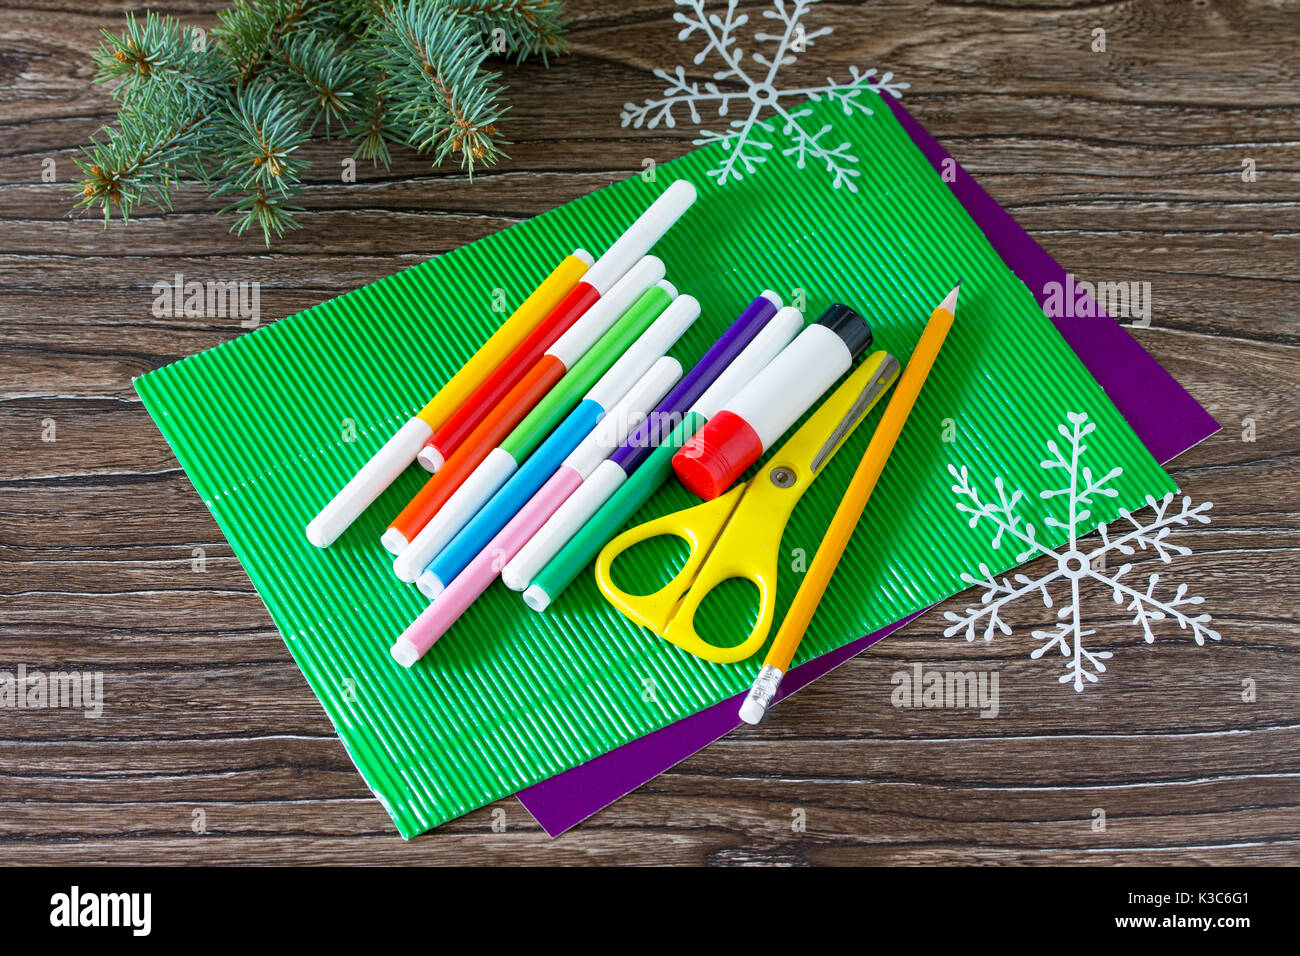 Hojas de papel de colores, marcadores, tijeras y pegamento para hacer una  tarjeta de felicitación con regalos de Navidad. Proyecto de arte para  niños, artesanía para niños. Cr Fotografía de stock -